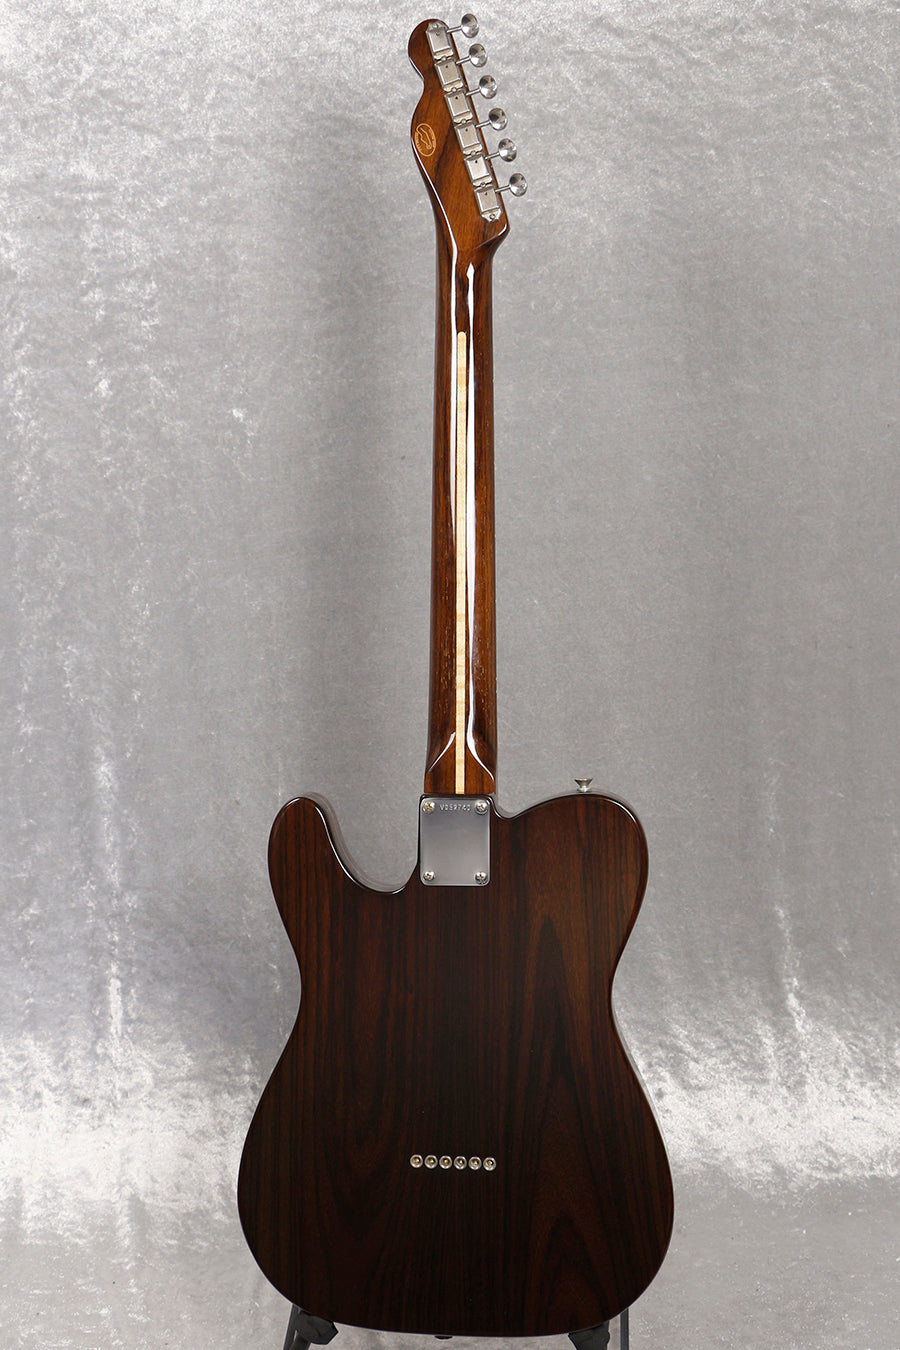 [SN V052740] USED Fender Custom Shop / All Rose Telecaster 1991 [06]